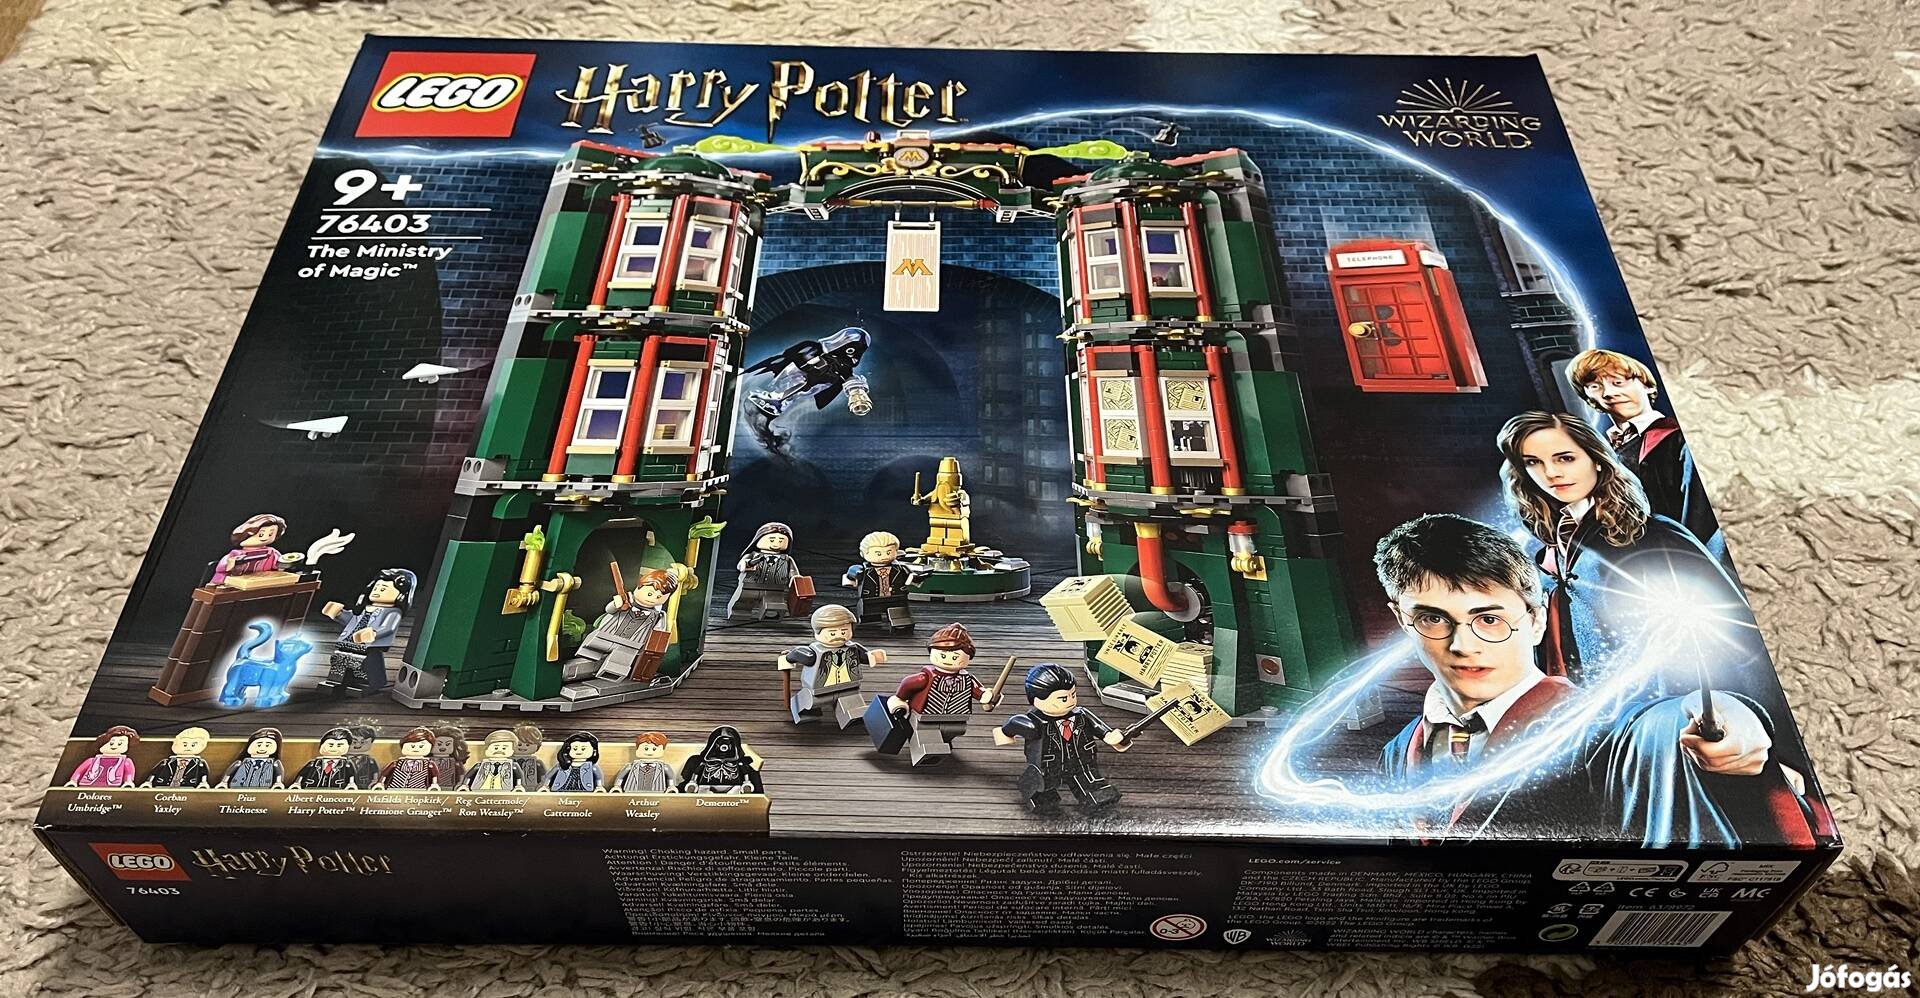 76403 Harry Potter - Mágiaügyi minisztérium lego